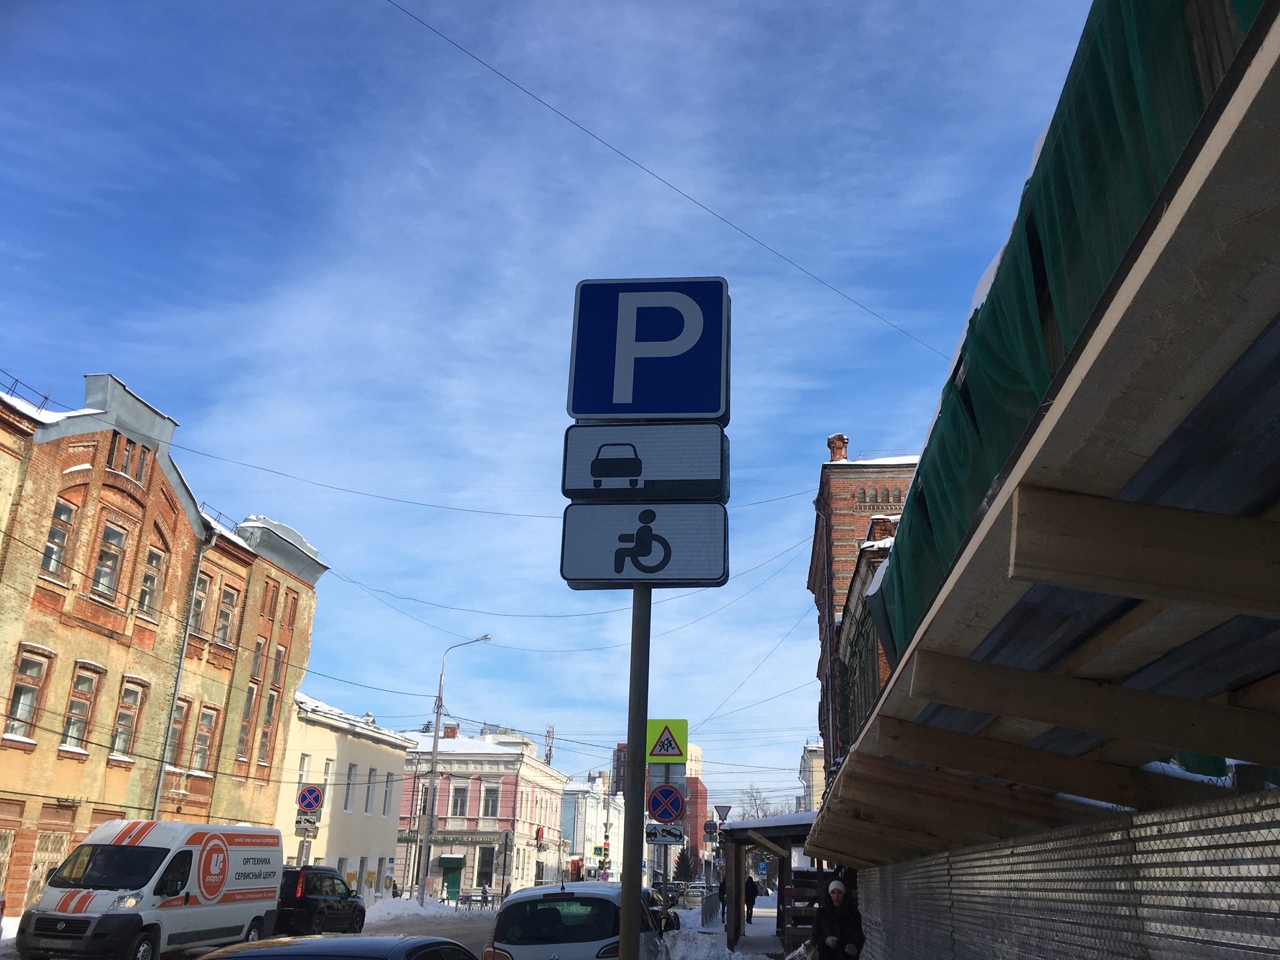 Избежать штрафов: как в Перми будет работать постоплата парковки?